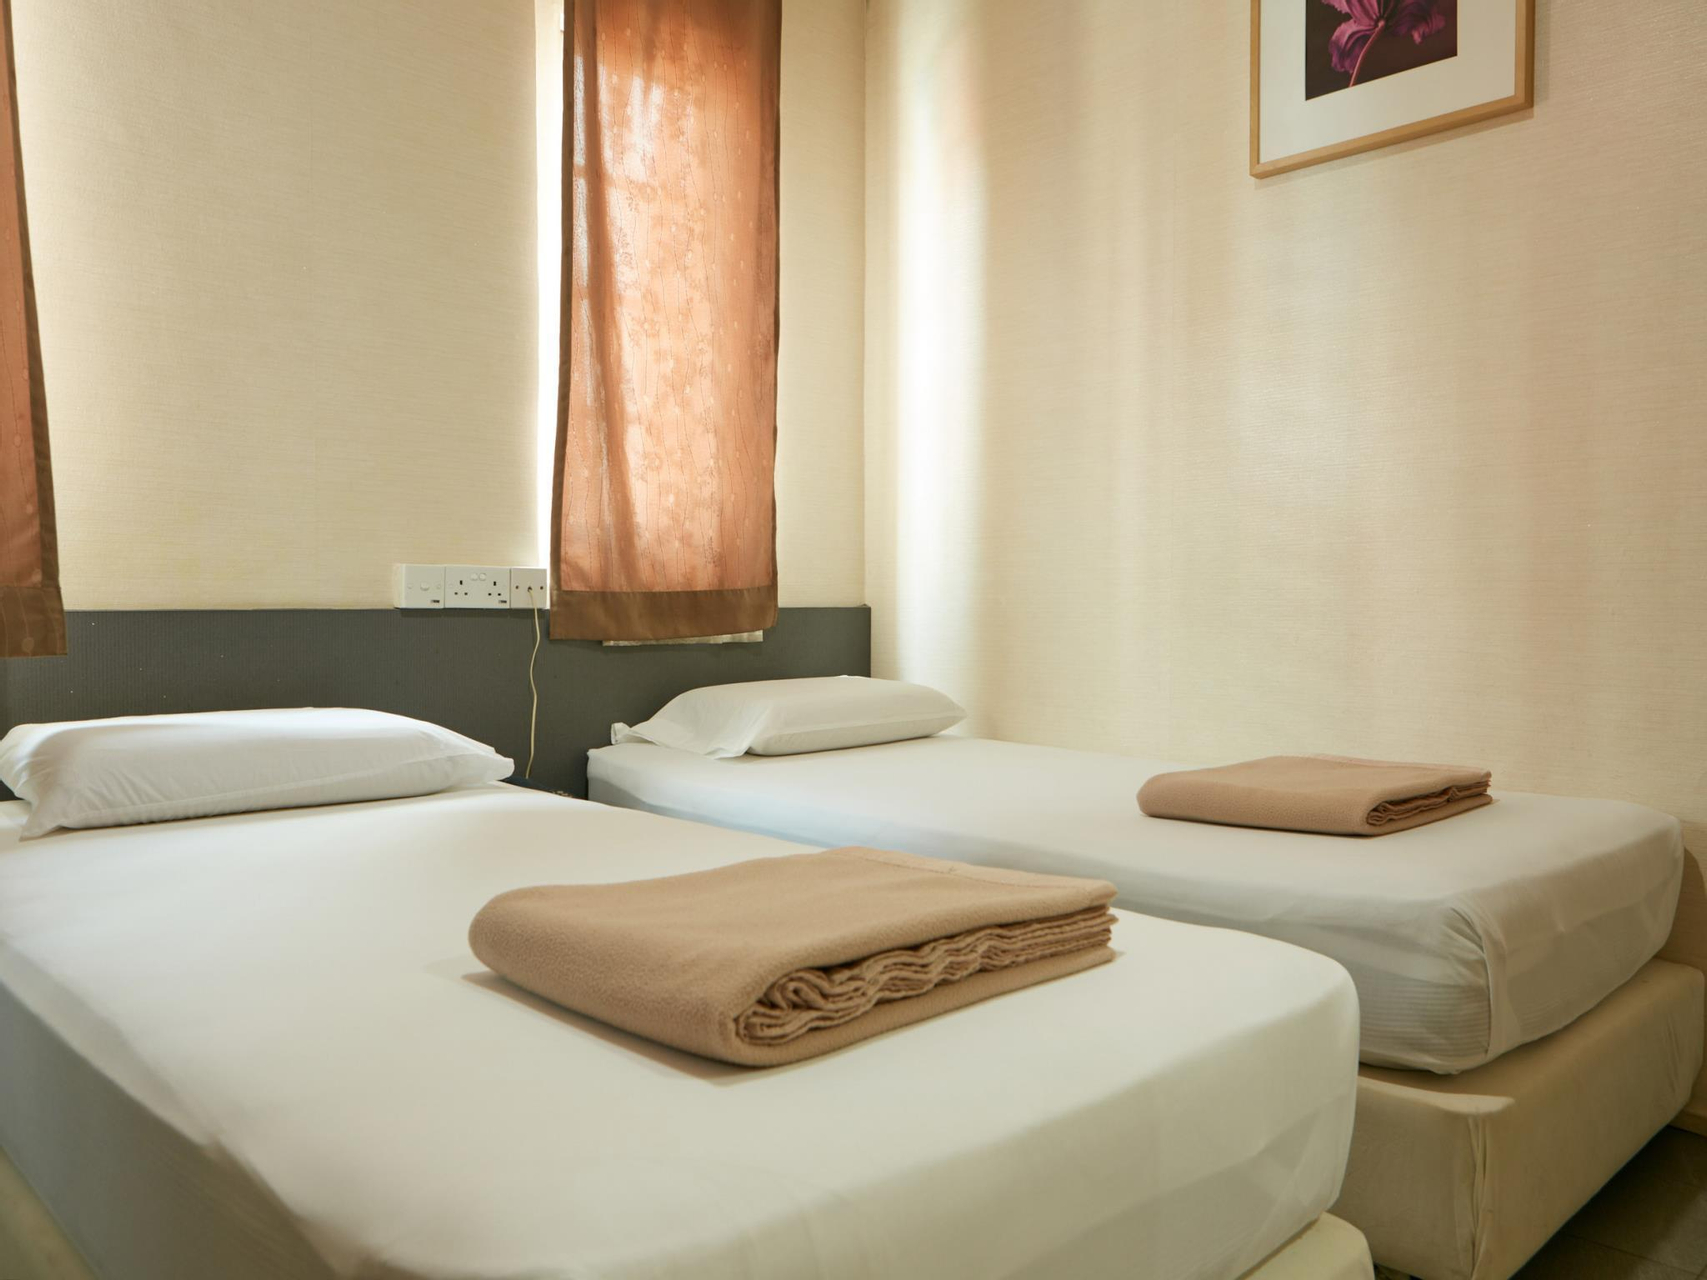 Bedroom 2, Amrise Hotel, Singapura